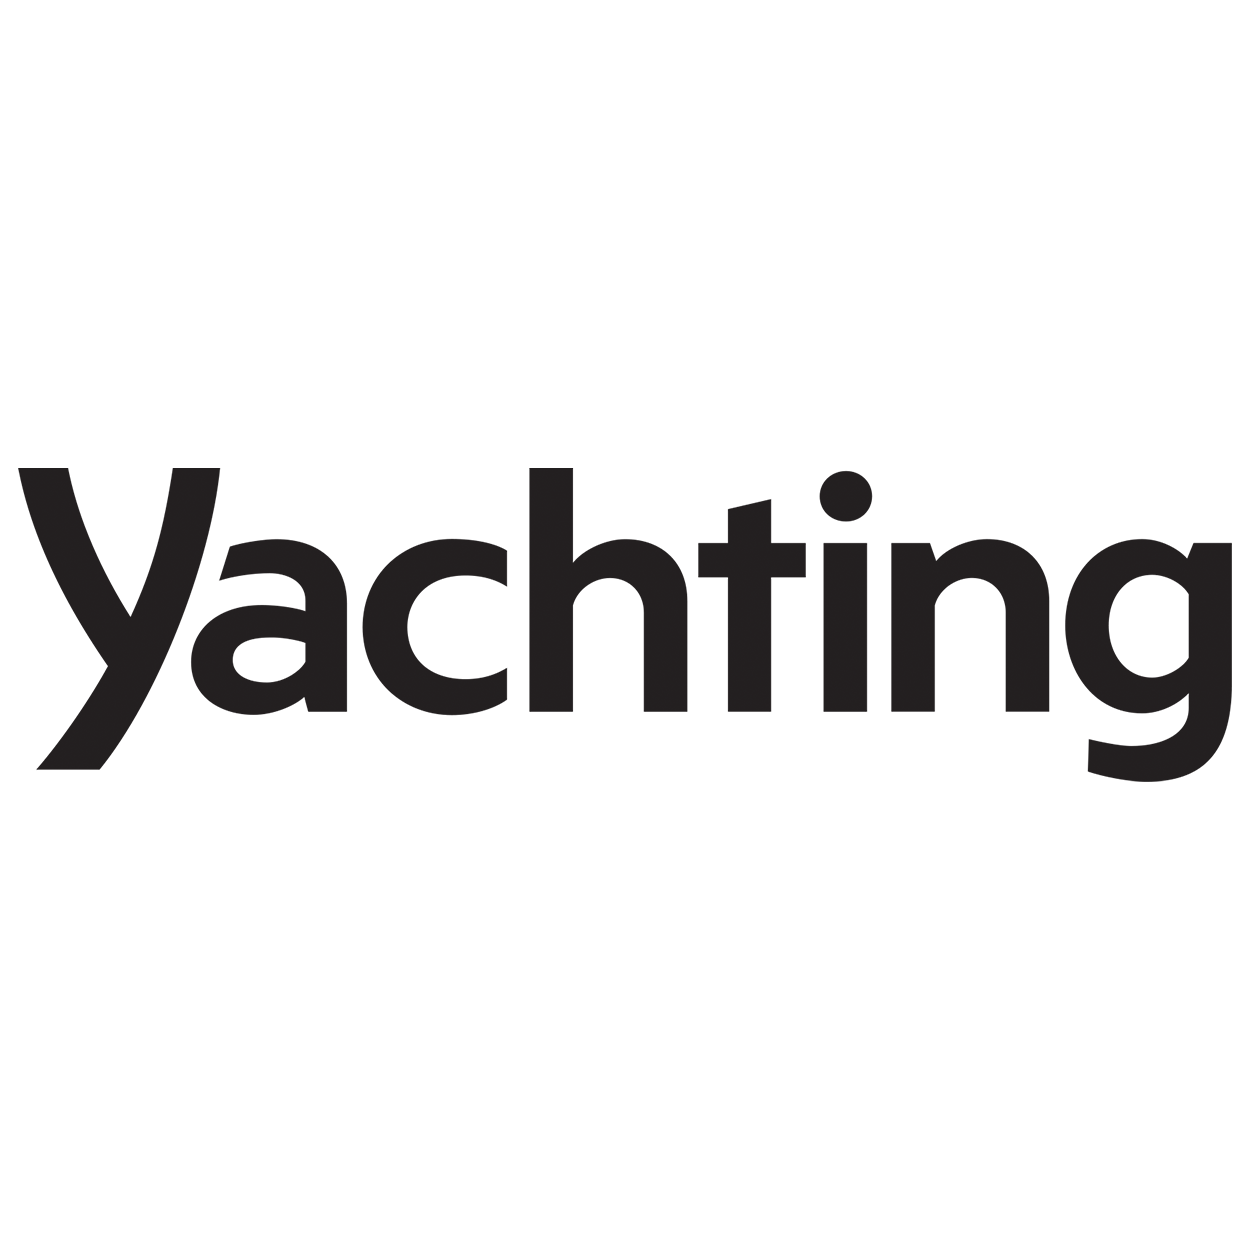 Yachting magazine logo